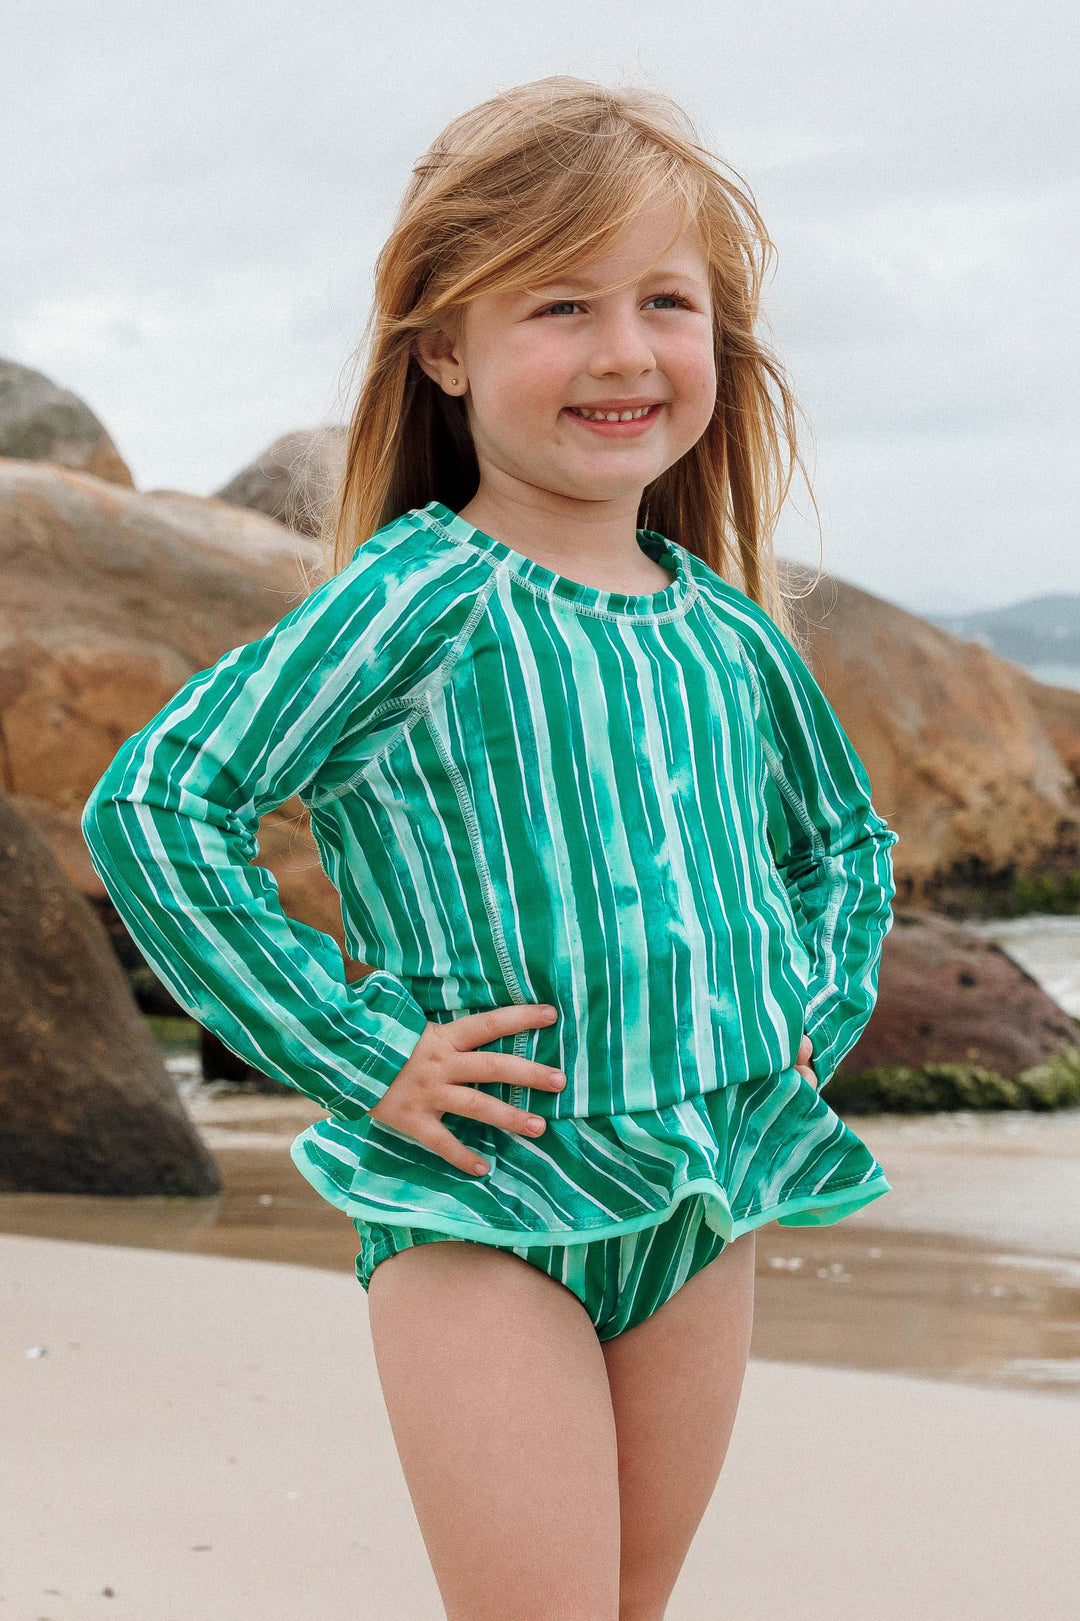 Camiseta UV com Proteção para Praia, Moda Infantil, na Estampa Listras Verdes, da Lili Sampedro.